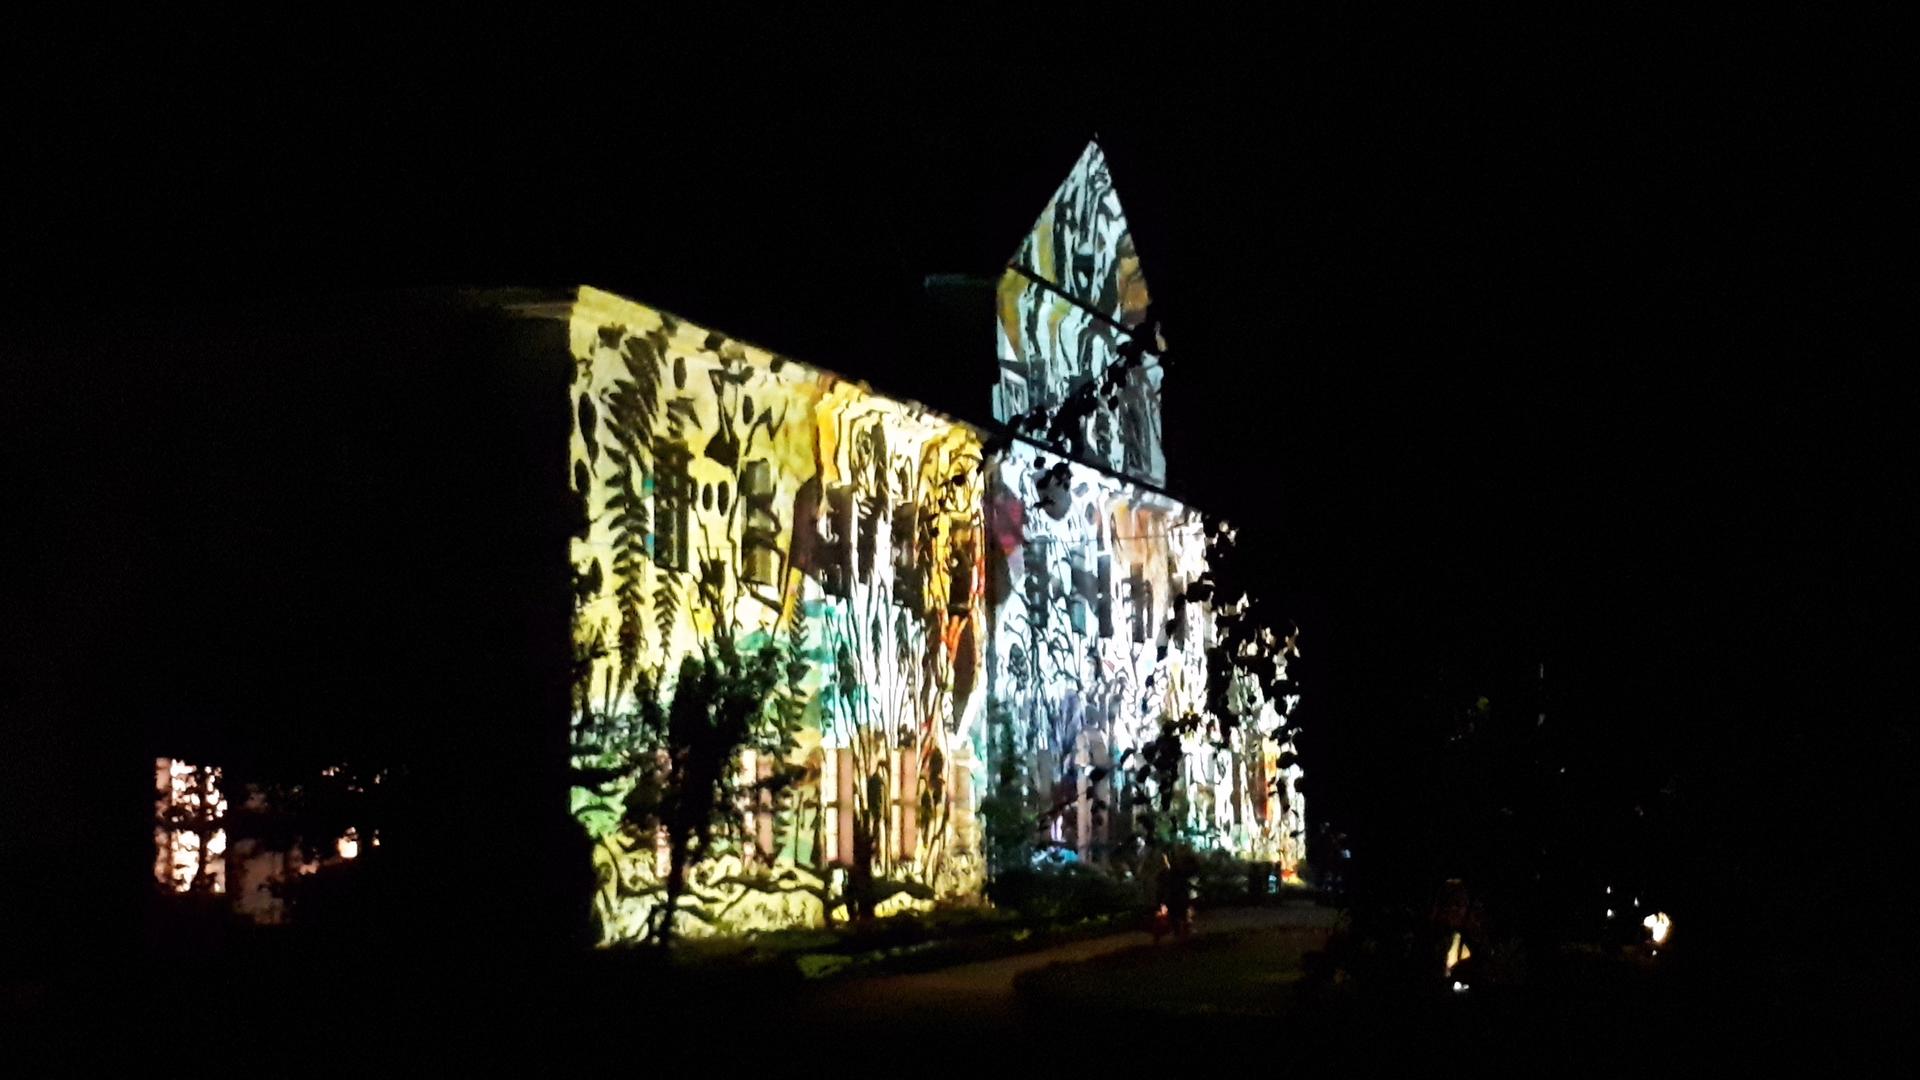 In einer schwarzen Nacht leuchtet die Fassade eines Schlosses in einer Lichtinstallation mit naturnahen Zeichnungen.